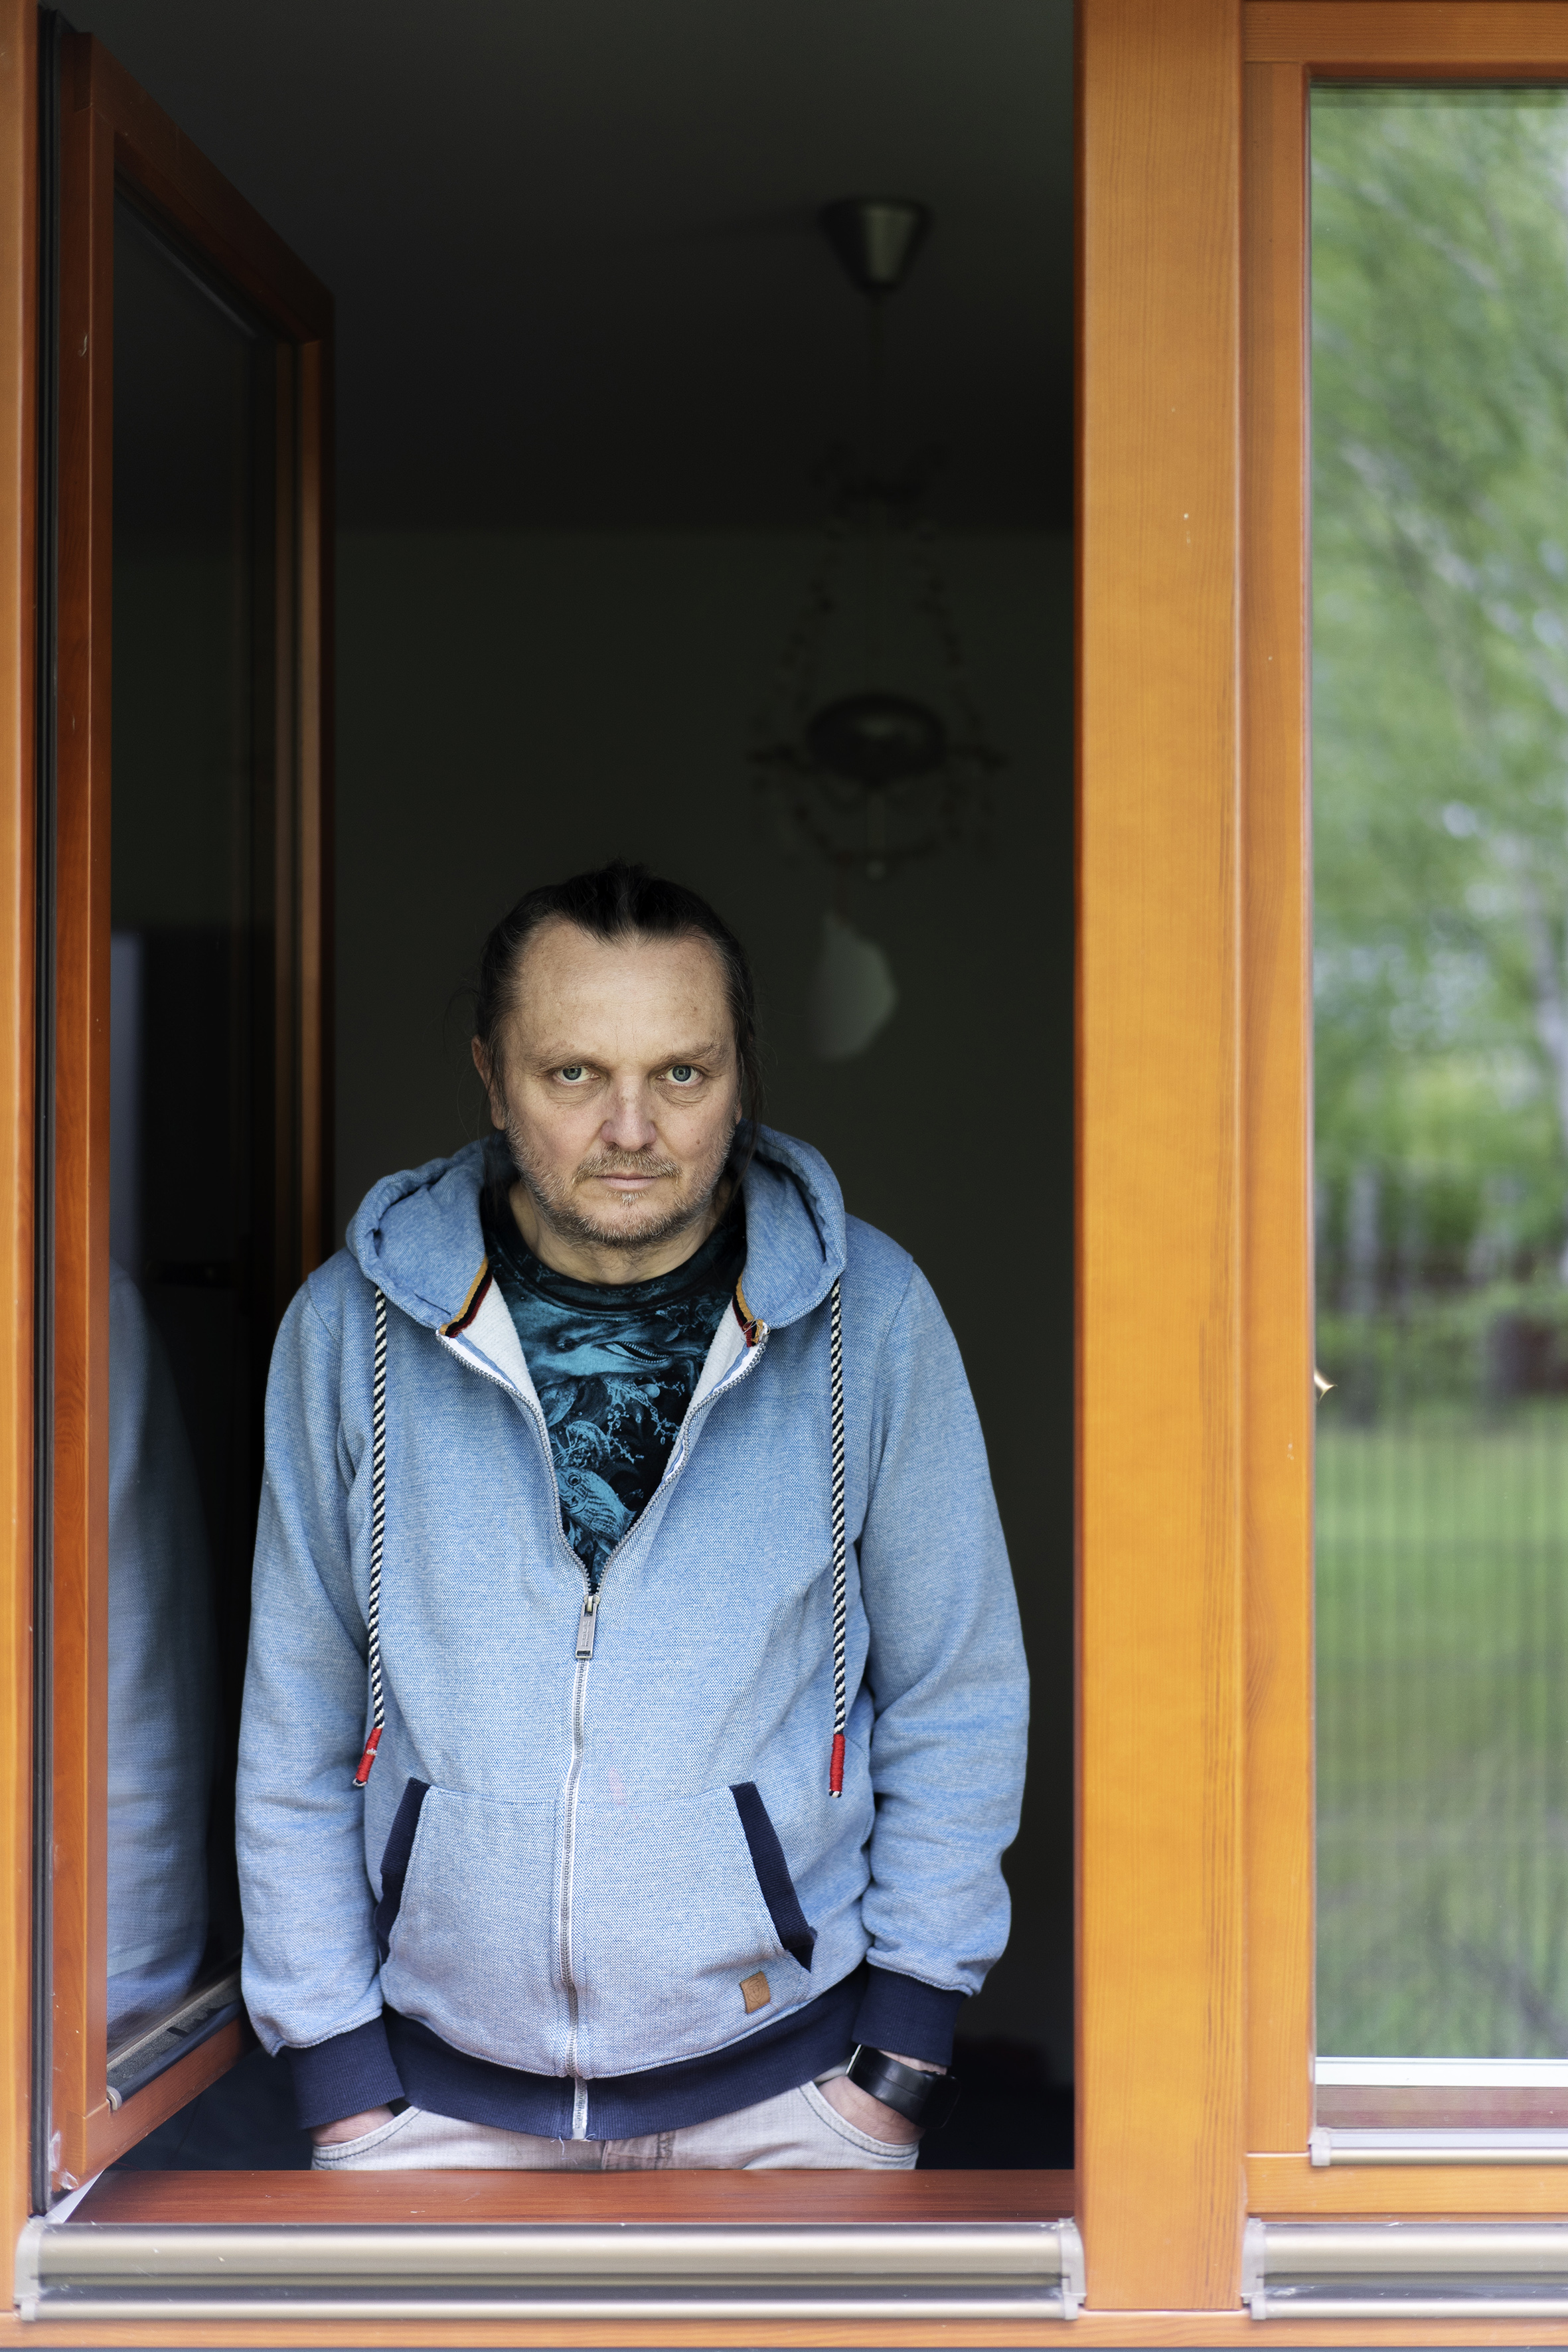 Był strach, jasne. Umierali już młodsi ode mnie – wspomina 55-letni Tomasz Majewski.